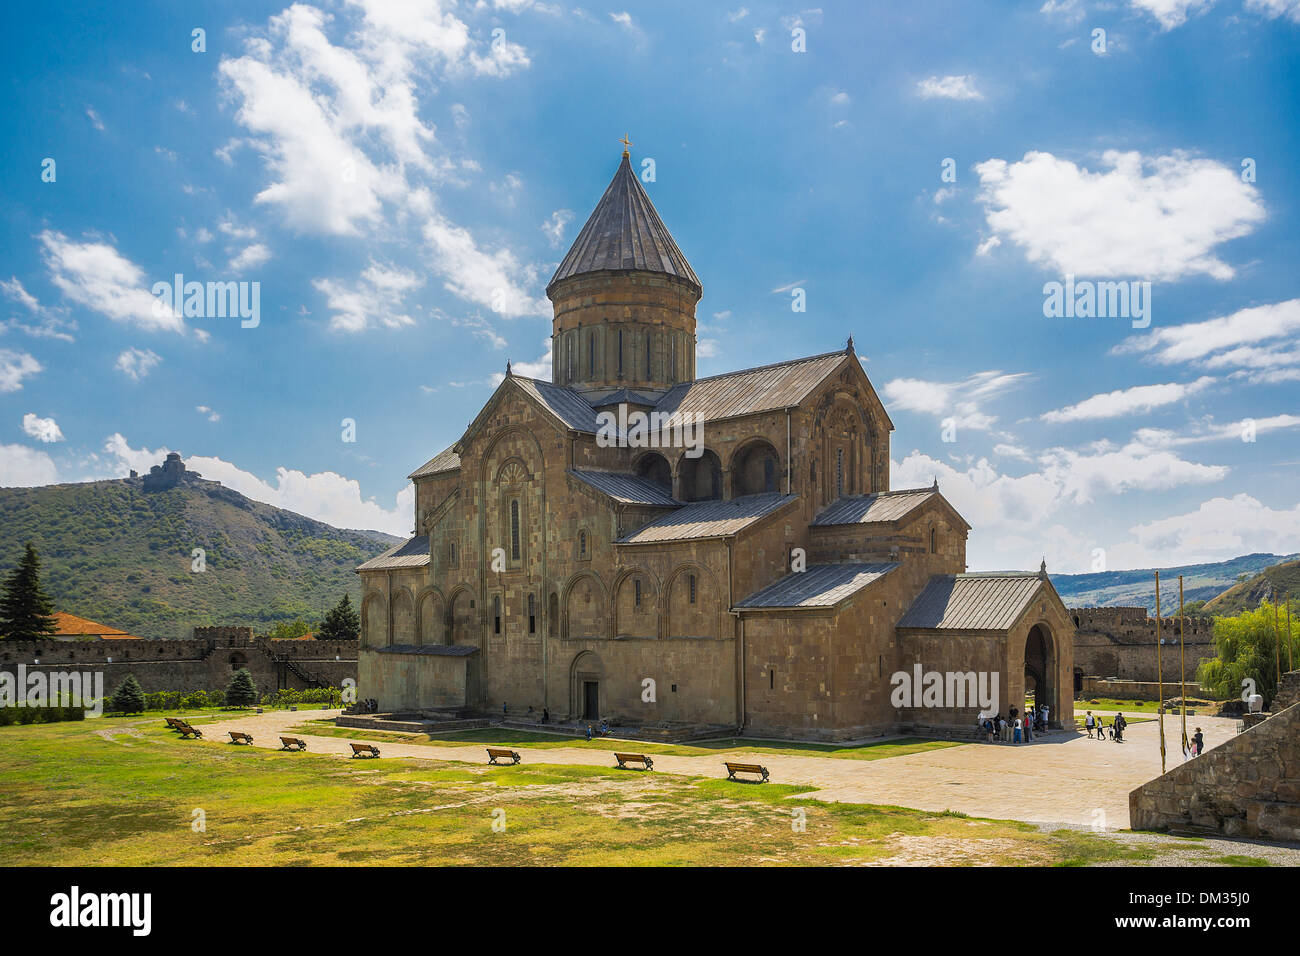 Eredità di Mondo Mtskheta architettura chiesa cattedrale ingresso Georgia Caucaso Eurasia storia locale storico san Foto Stock